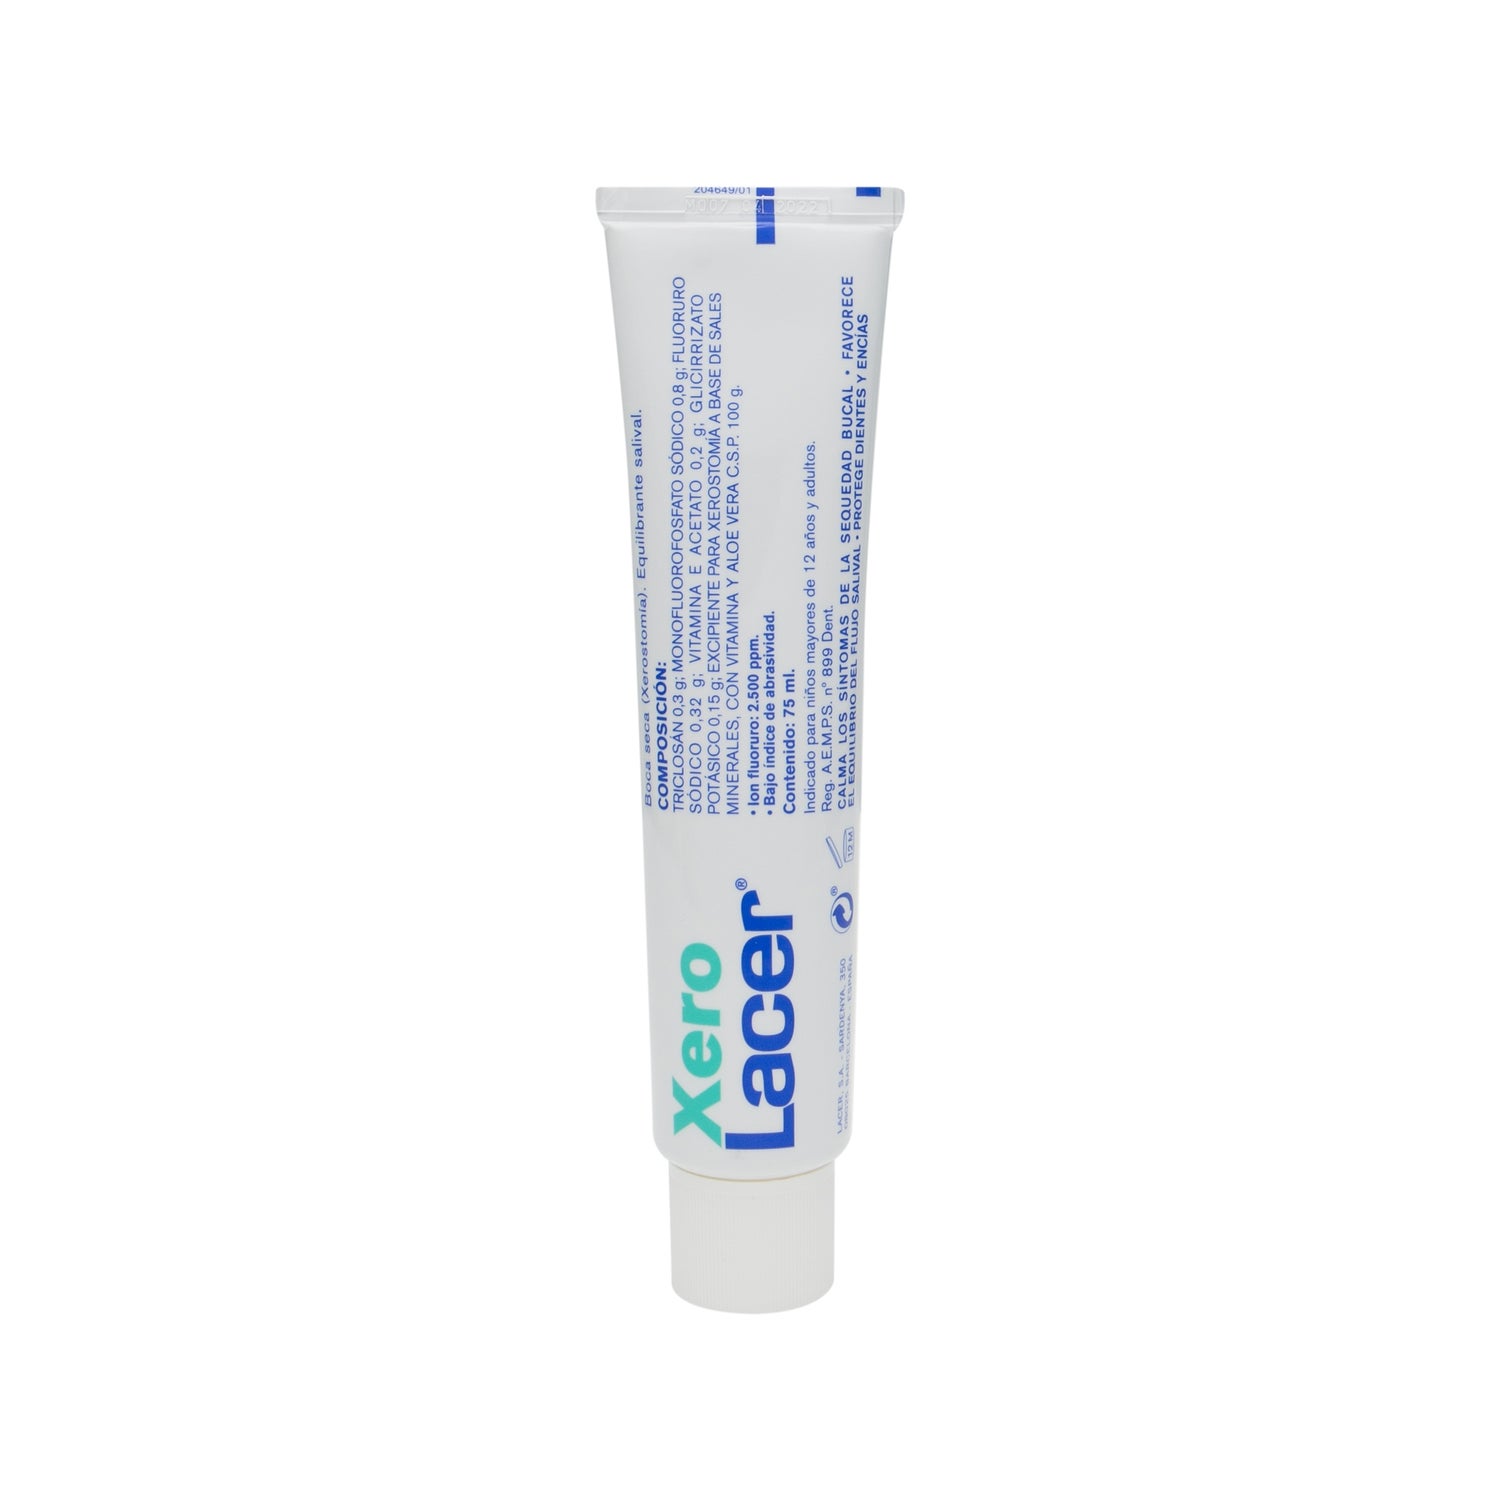 XeroLacer pasta dental PromoFarma